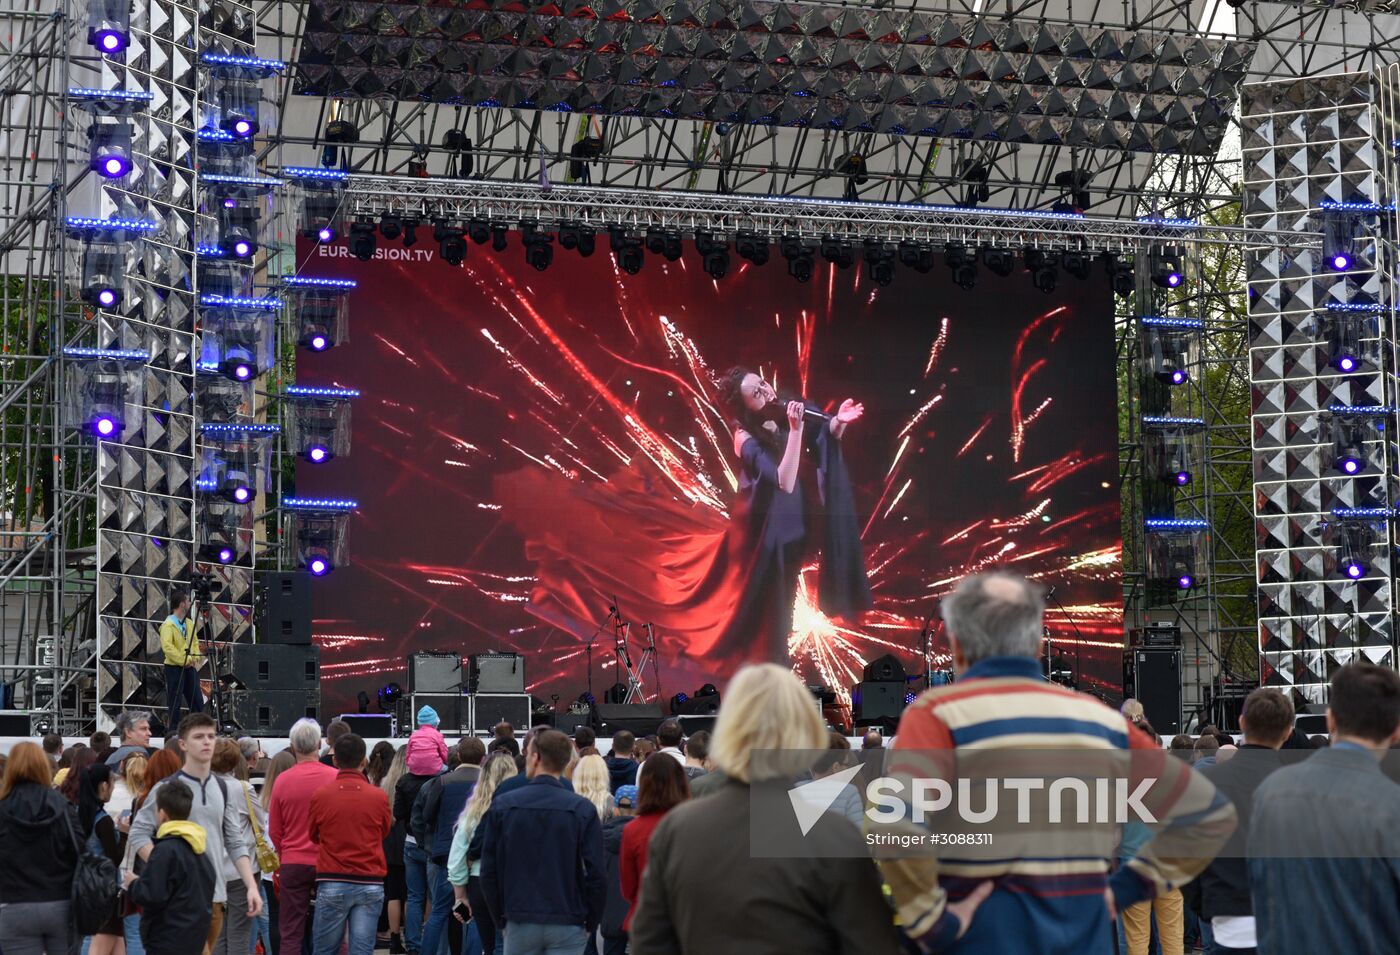 Eurovision 2017 fan zone opens in Kiev